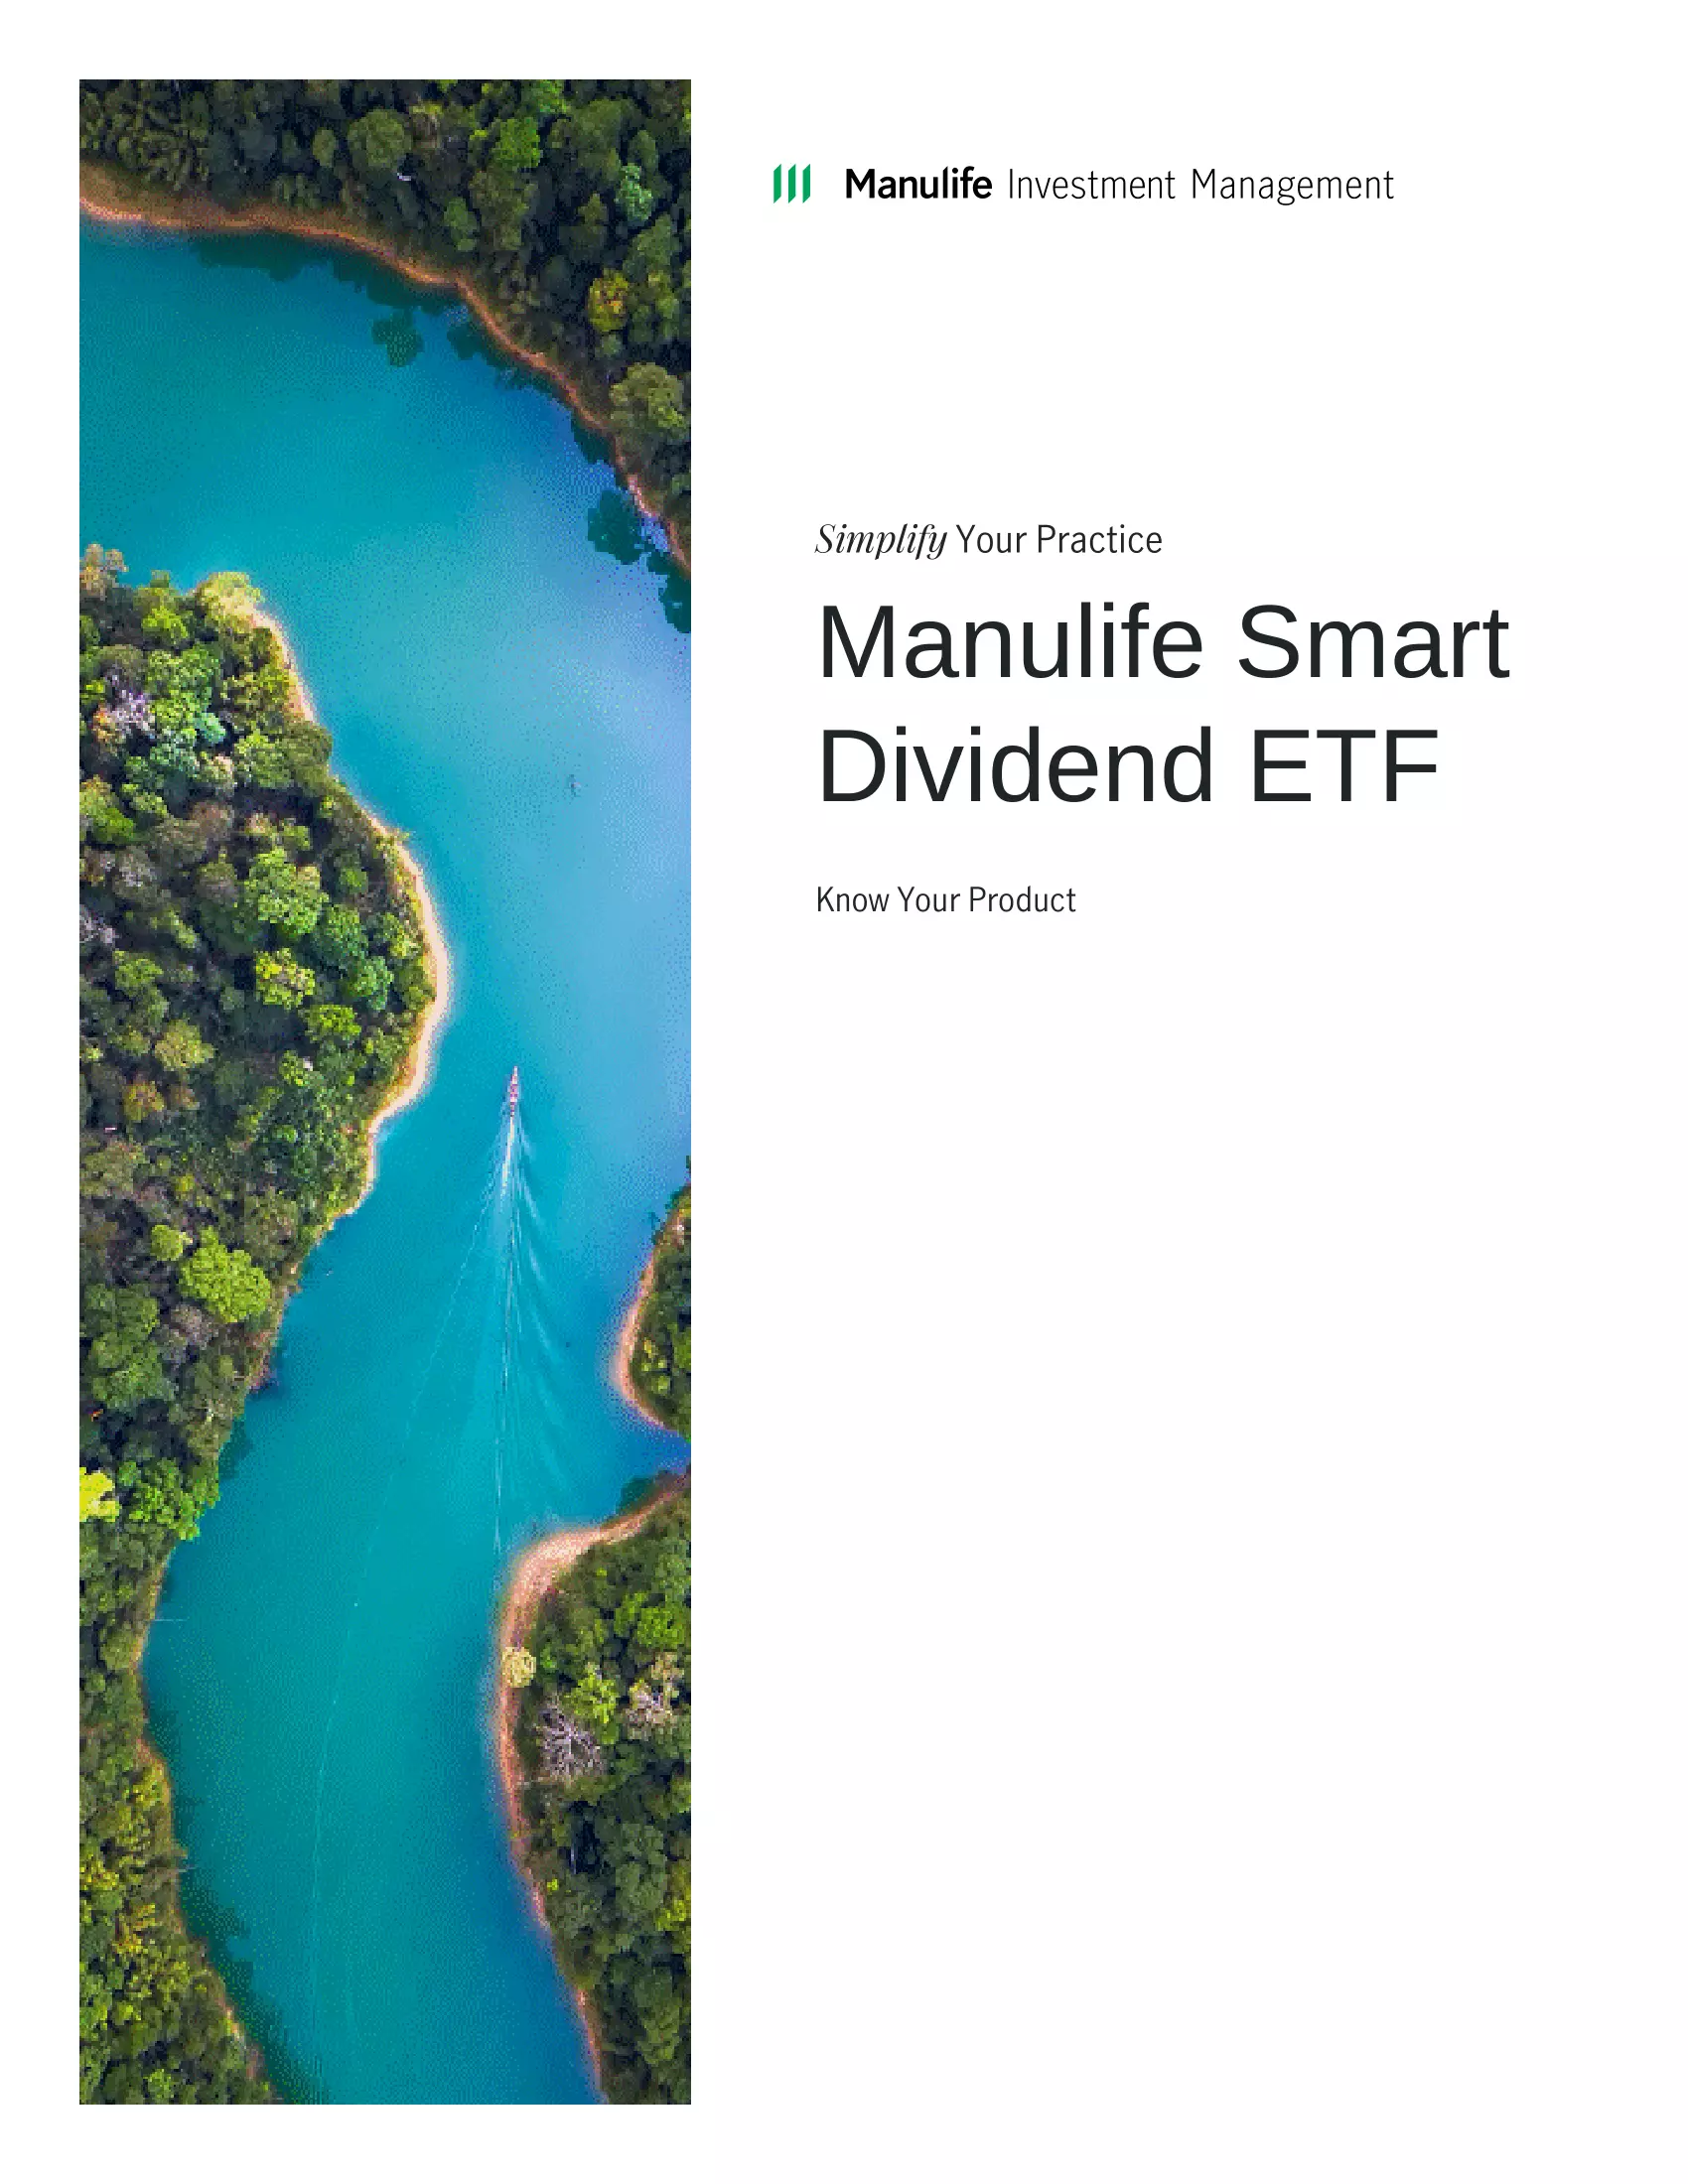 CDIV: Manulife Smart Dividend ETF